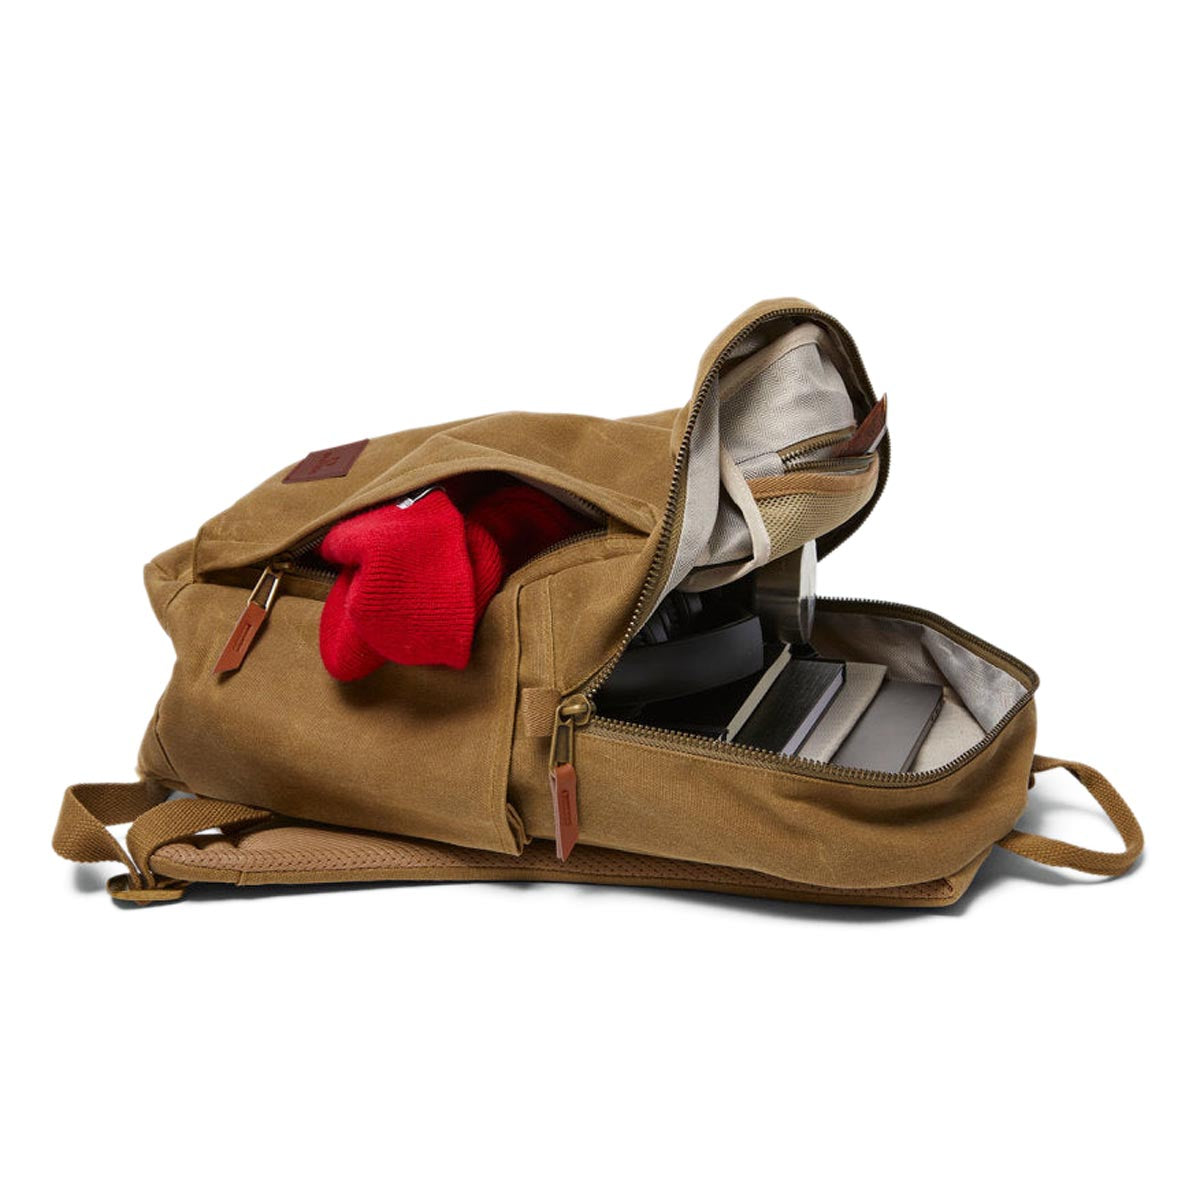 Brixton Traveler Backpack - Olive Brown image 4